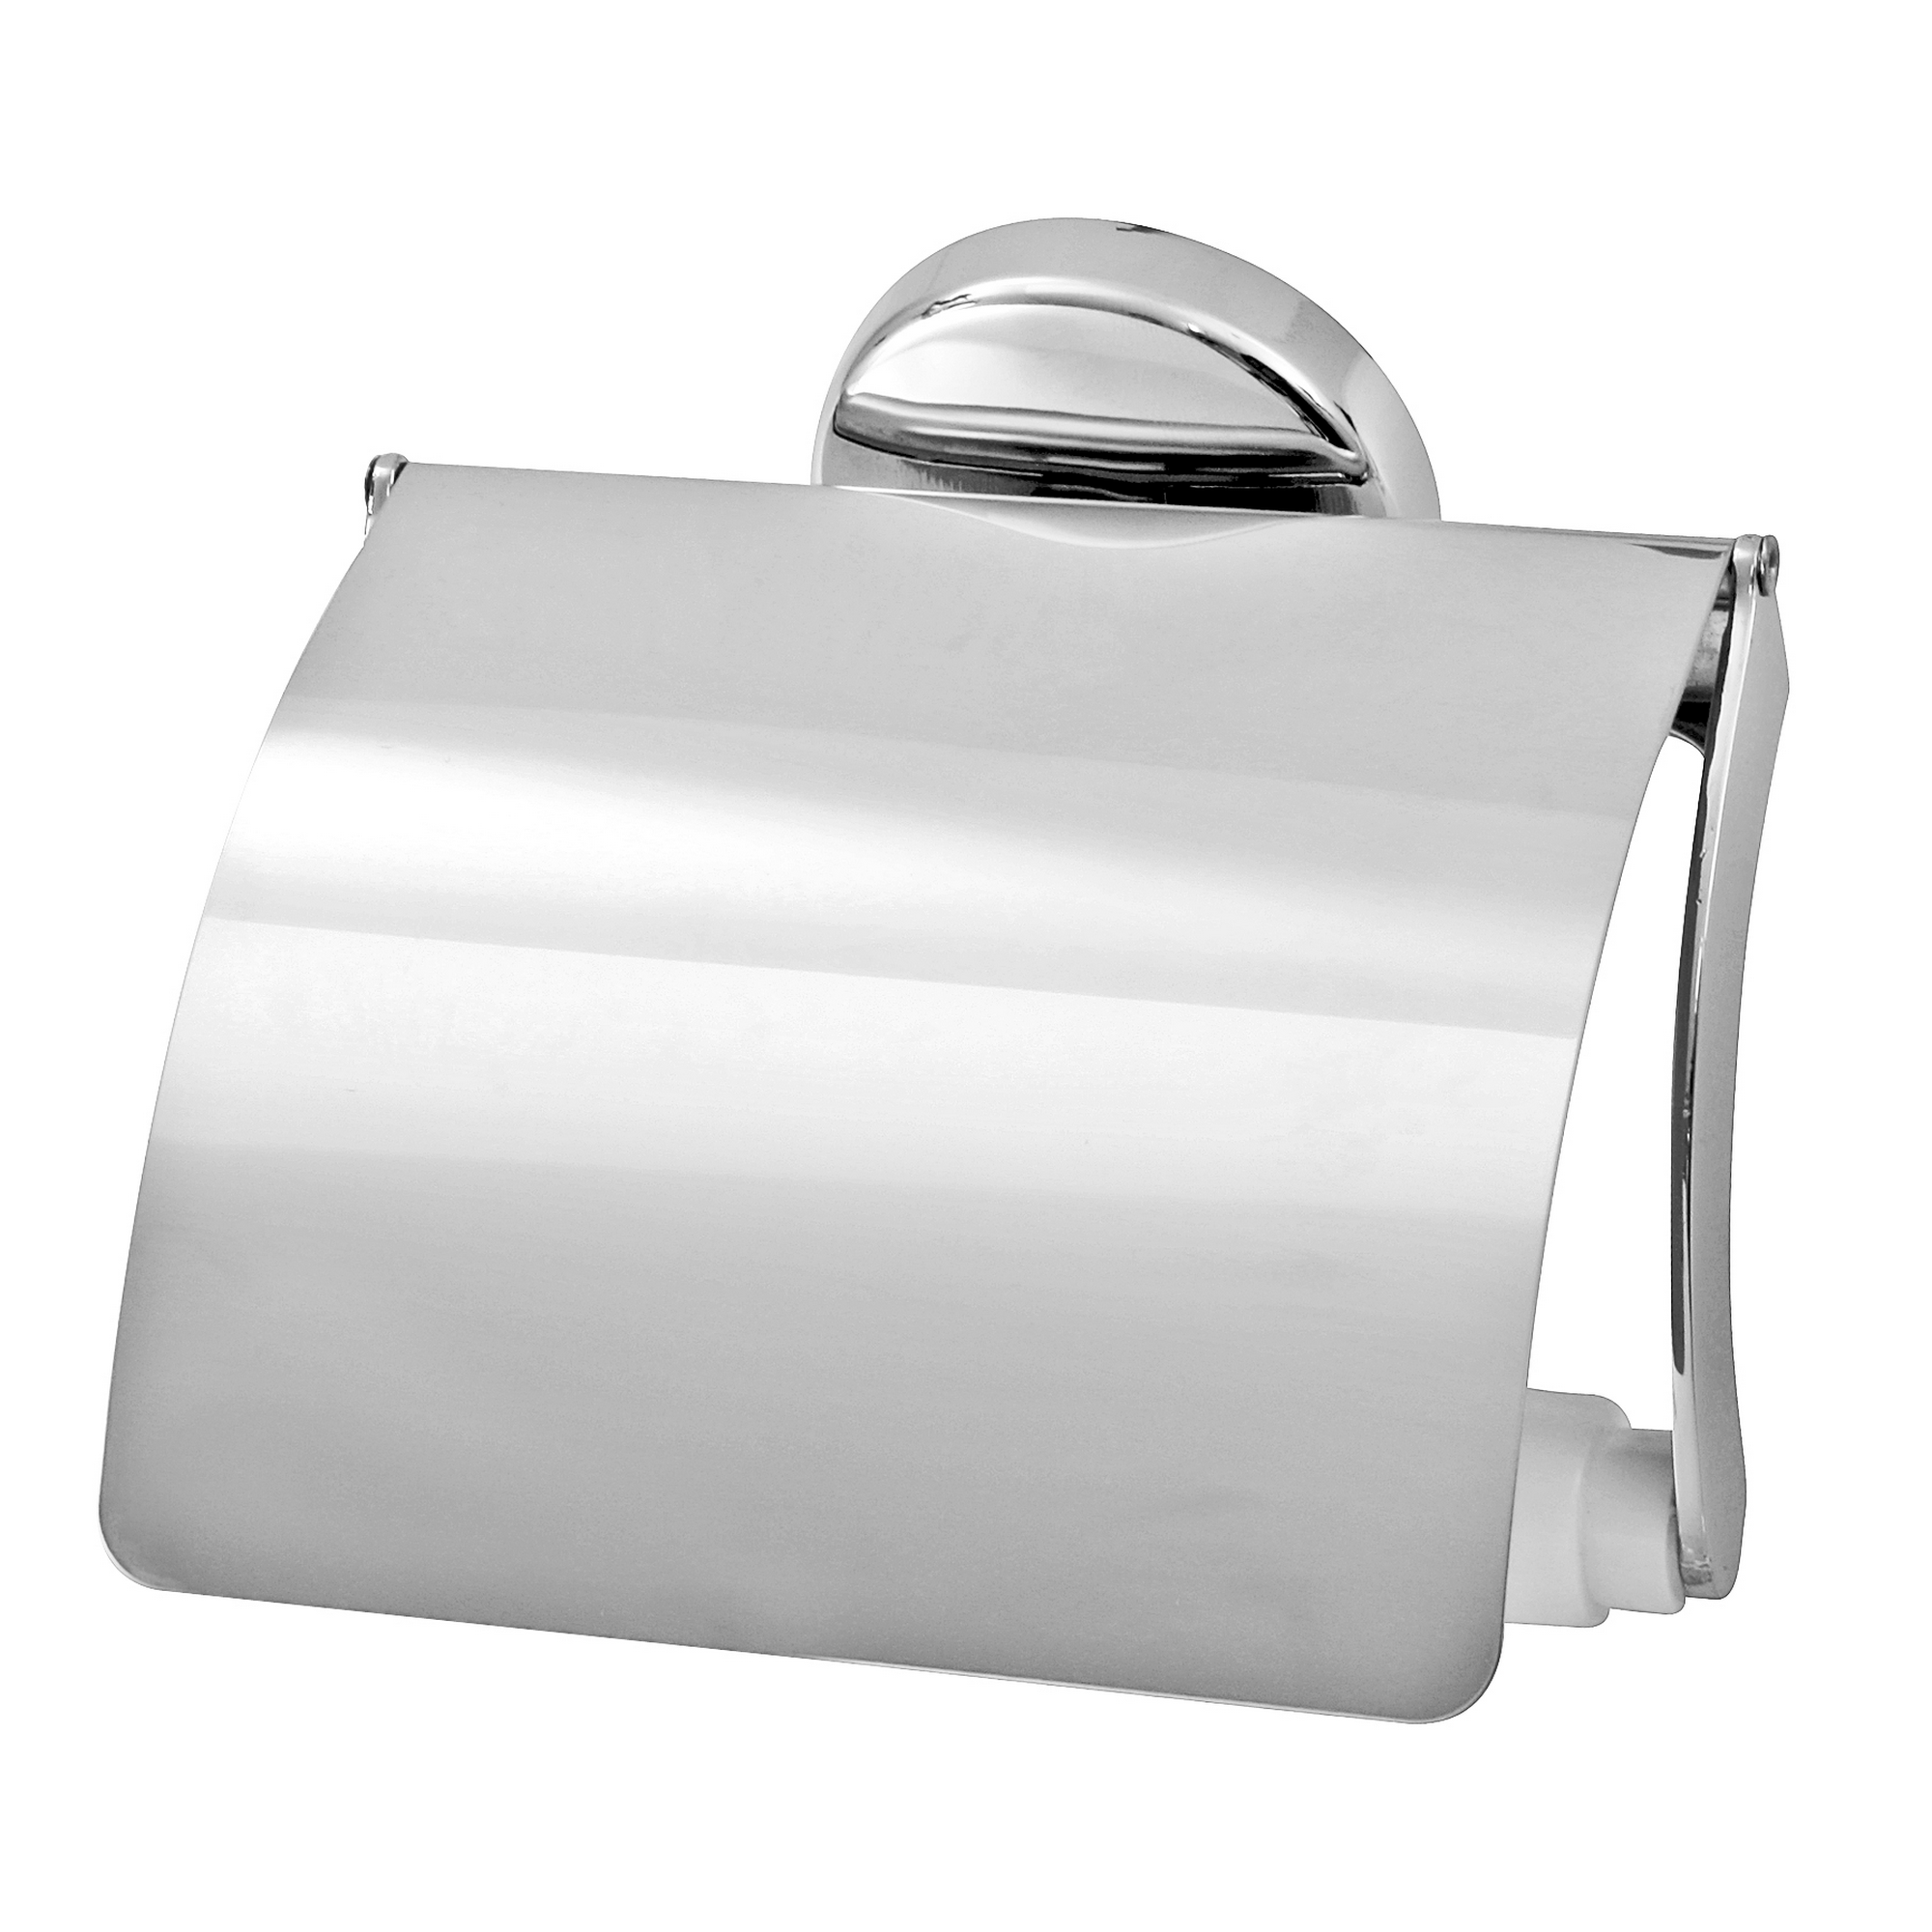 Toilettenpapierhalter mit Deckel 'Vision' wandhängend verchromt + product picture